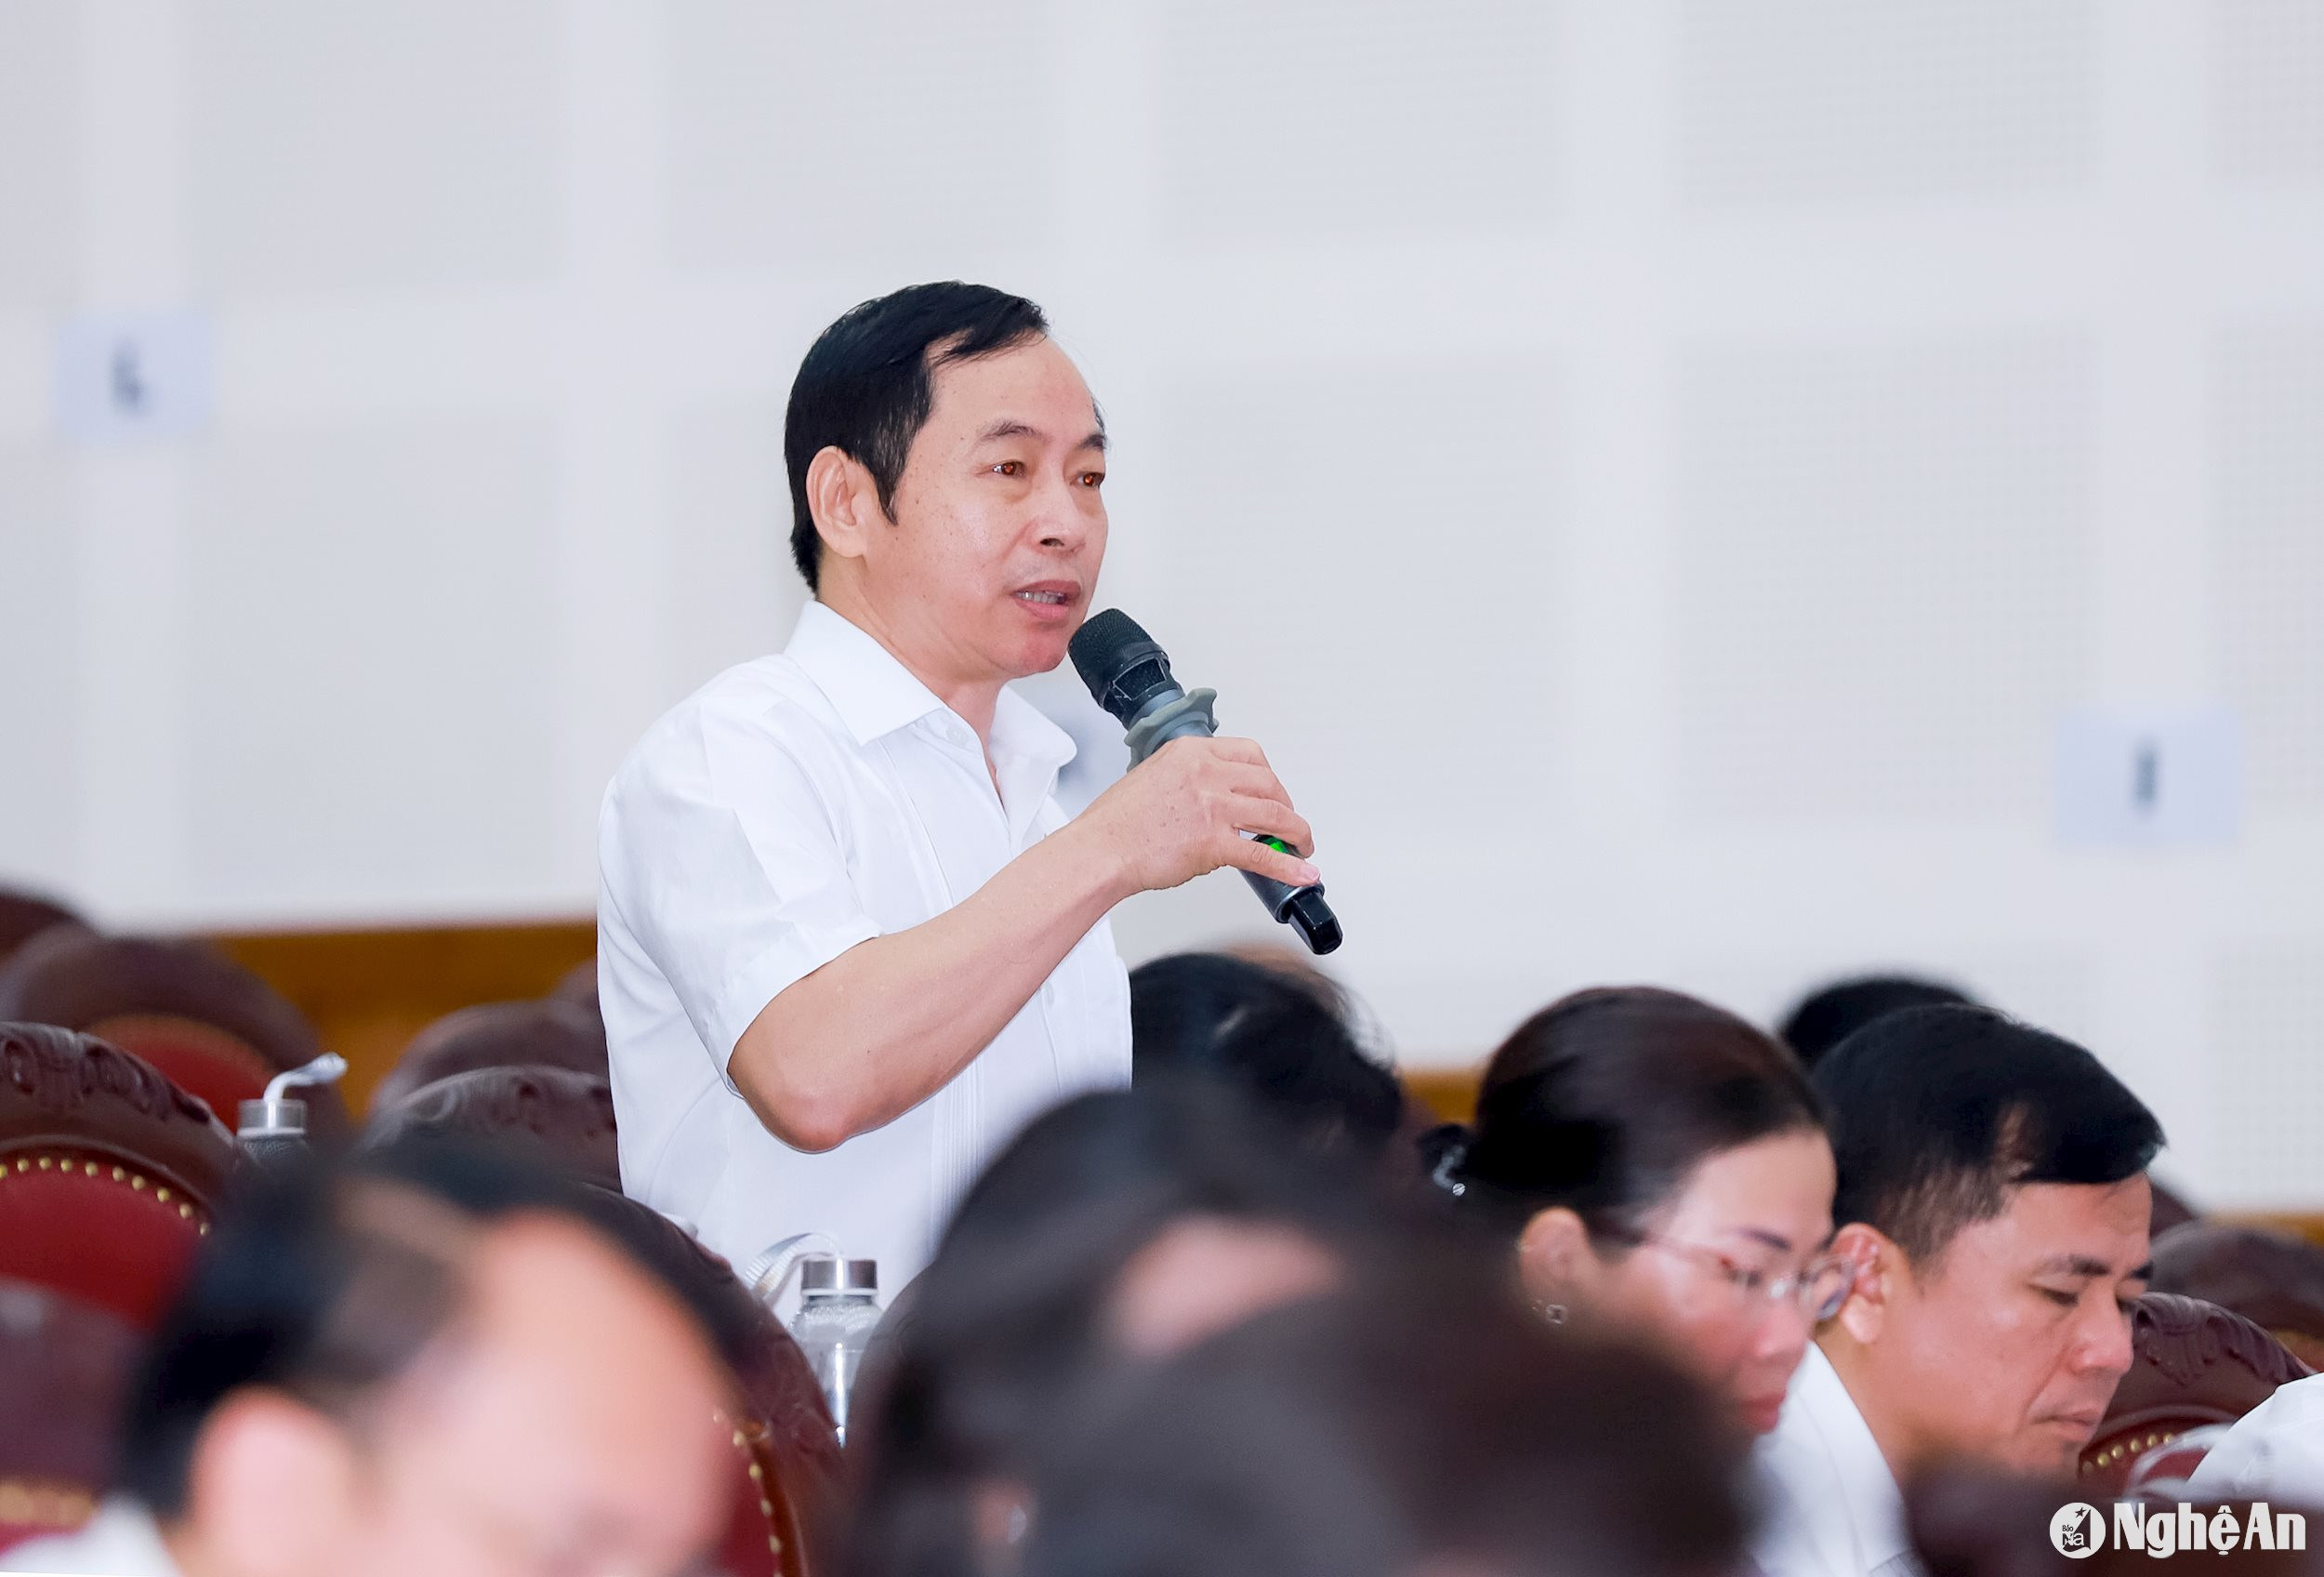 Đại biểu Lê Đình lý - Ủy viên Ban Chấp hành Đảng bộ tỉnh, Phó Trưởng ban Tổ chức Tỉnh ủy, Tổ đại biểu thành phố Vinh phát biểu thảo luận về dự thảo Nghị quyết về việc tán thành chủ trương sắp xếp các đơn vị hành chính cấp xã trên địa bàn tỉnh Nghệ An, giai đoạn 2023 - 2025.